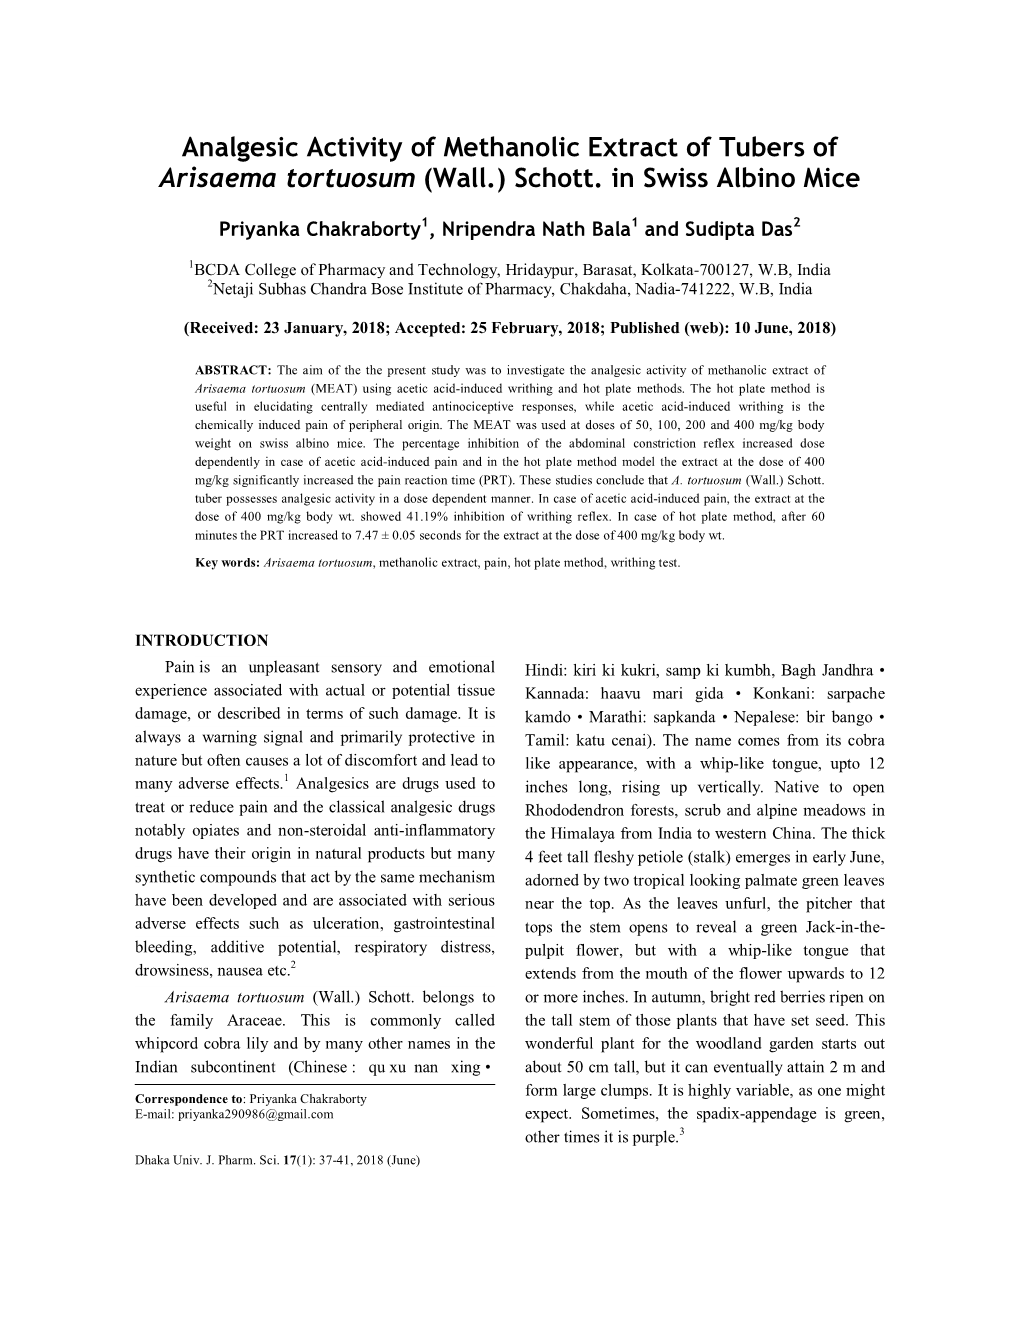 Analgesic Activity of Methanolic Extract of Tubers of Arisaema Tortuosum (Wall.) Schott